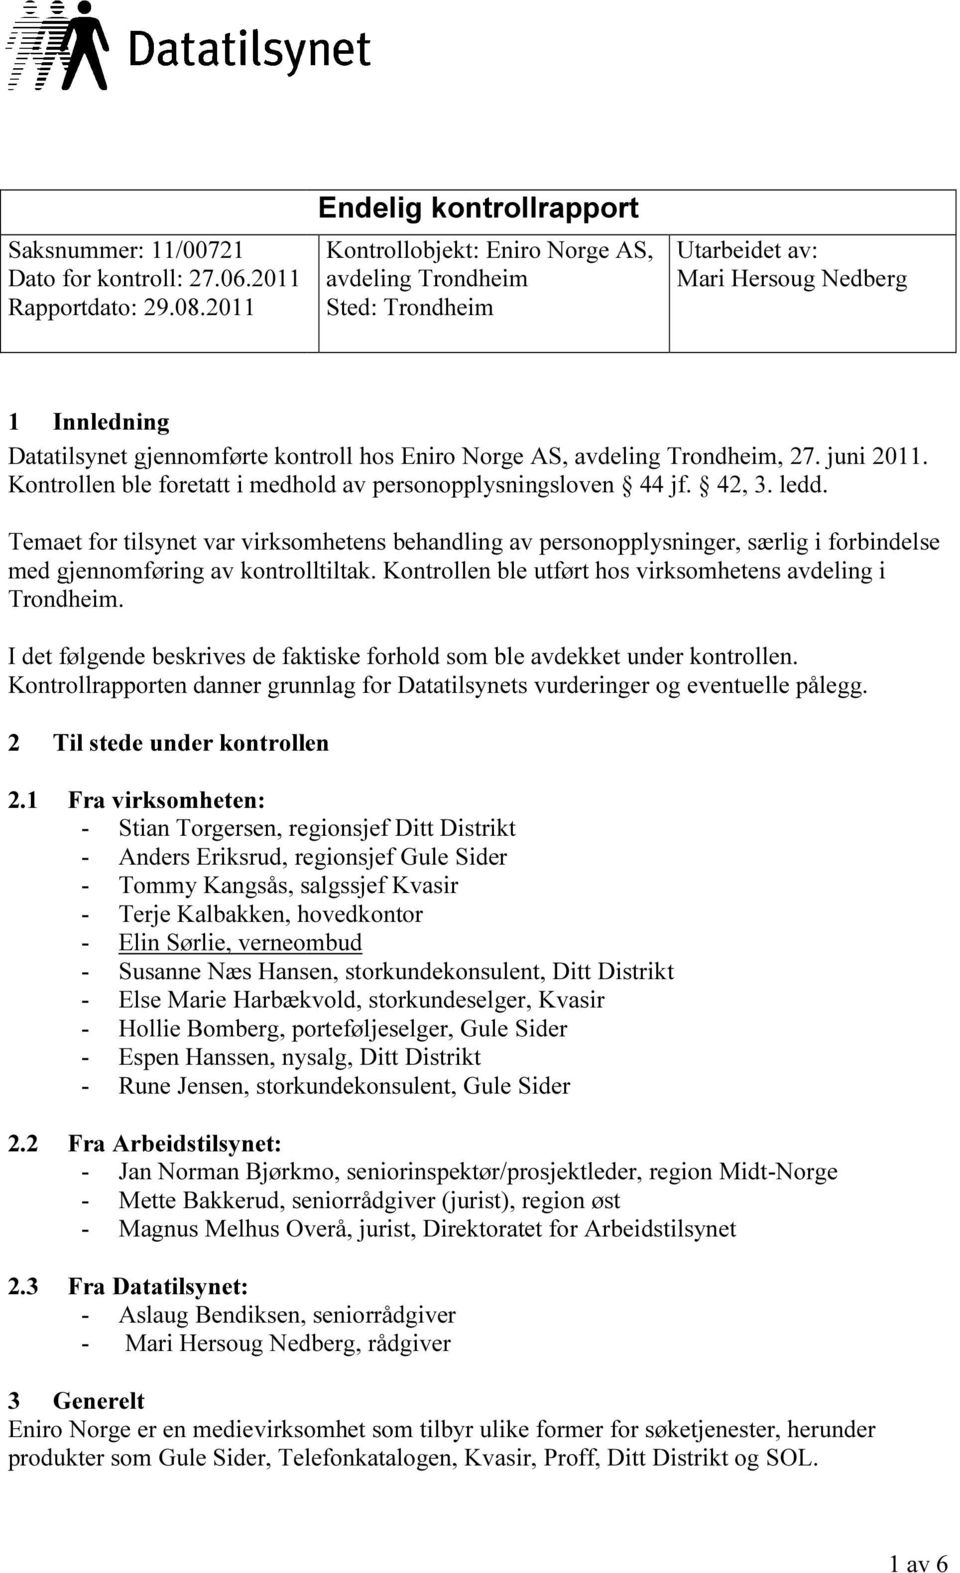 avdeling Trondheim, 27. juni 2011. Kontrollen ble foretatt i medhold av personopplysningsloven 44 jf. 42, 3. ledd.